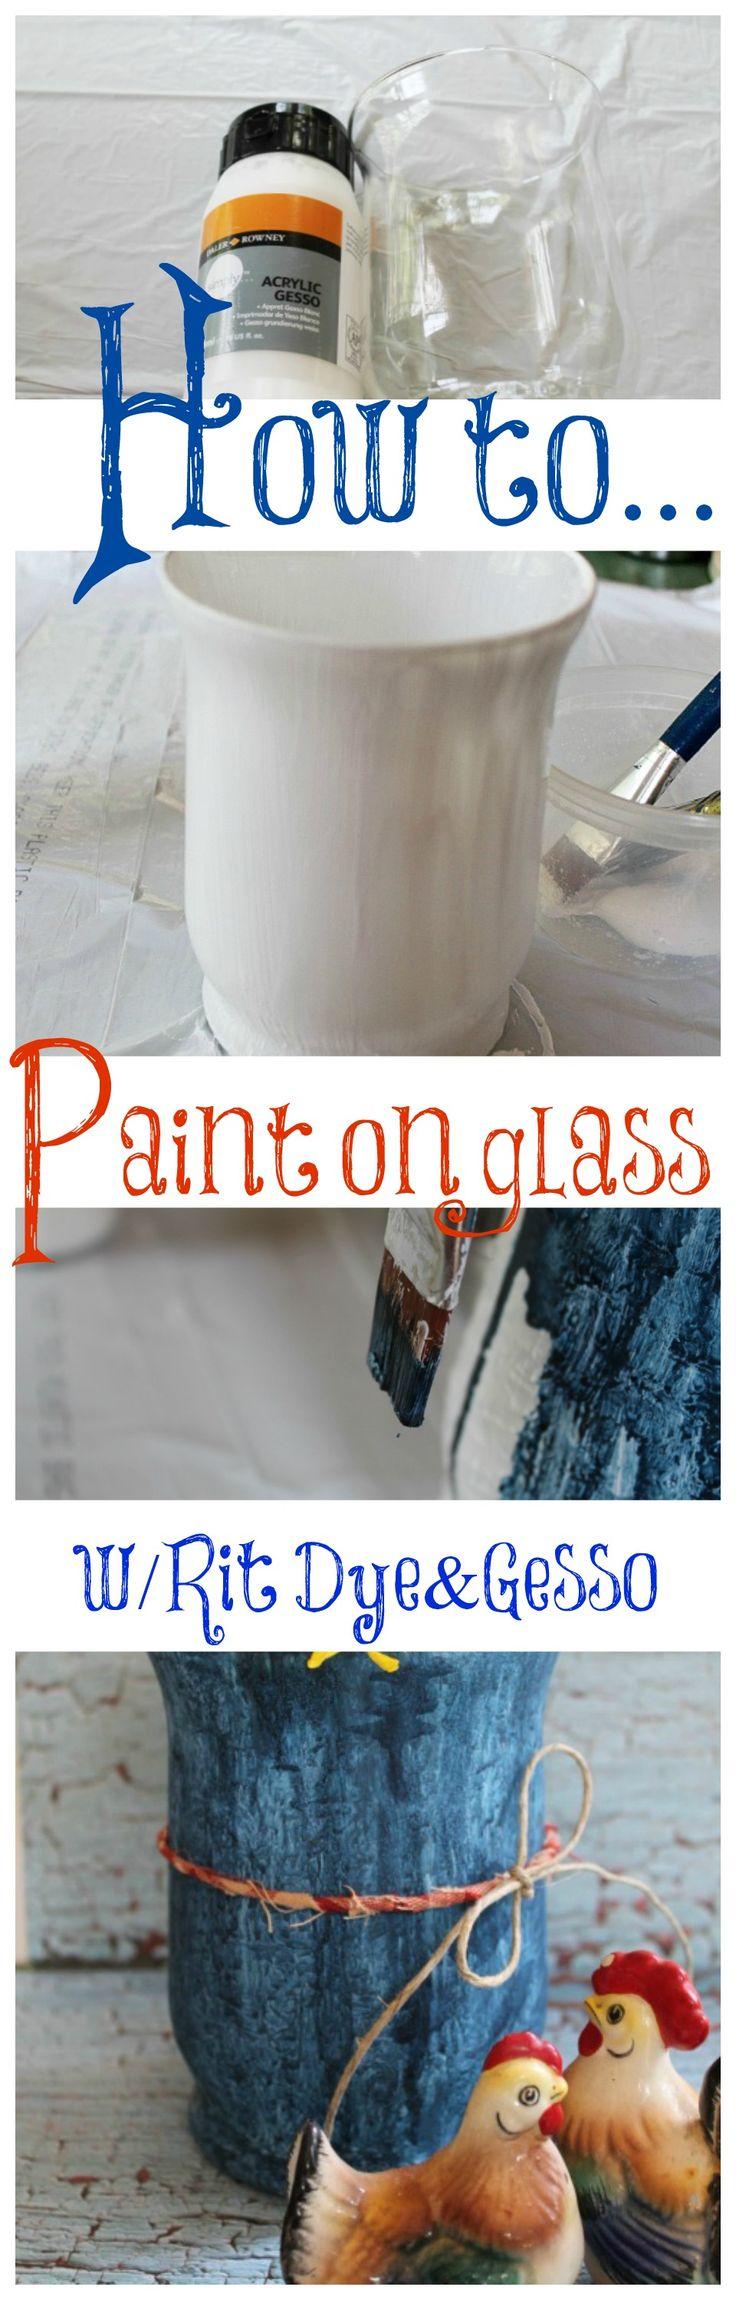 زفاف - Painting On Glass With Gesso And Rit Dye, Another Experiment